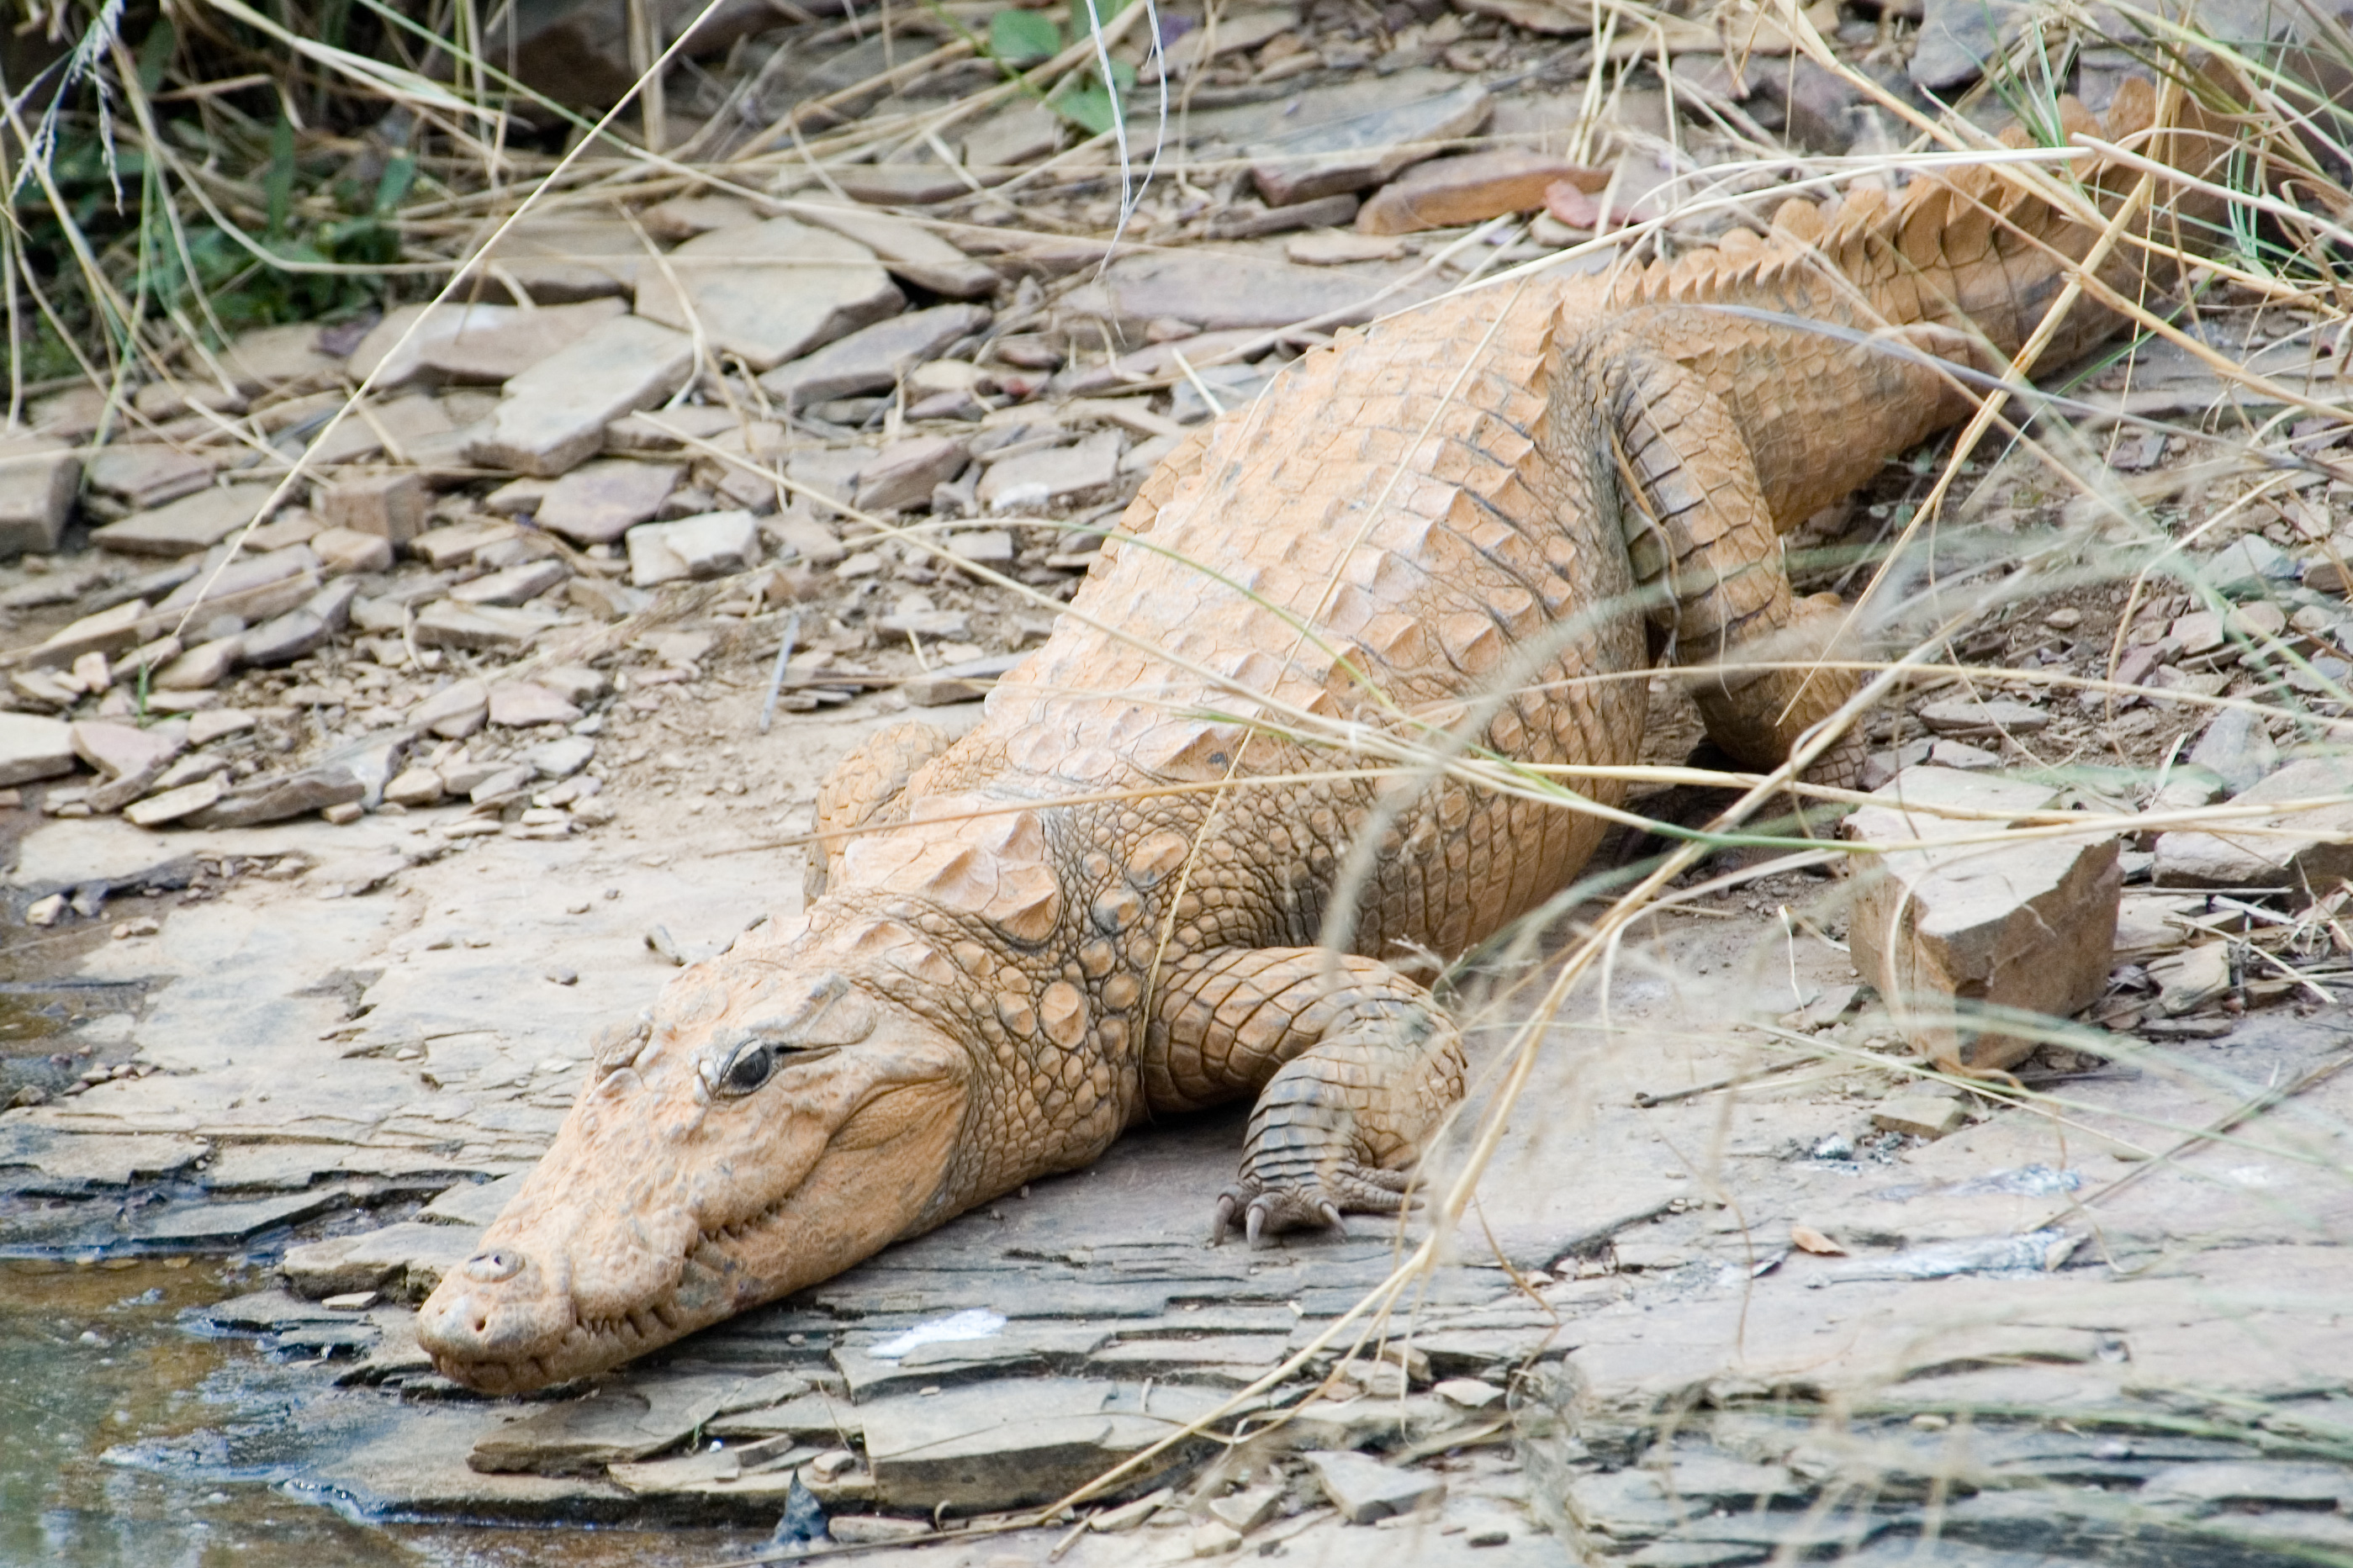 Crocodile carcass found in Odisha's Bhitarkanika National Park